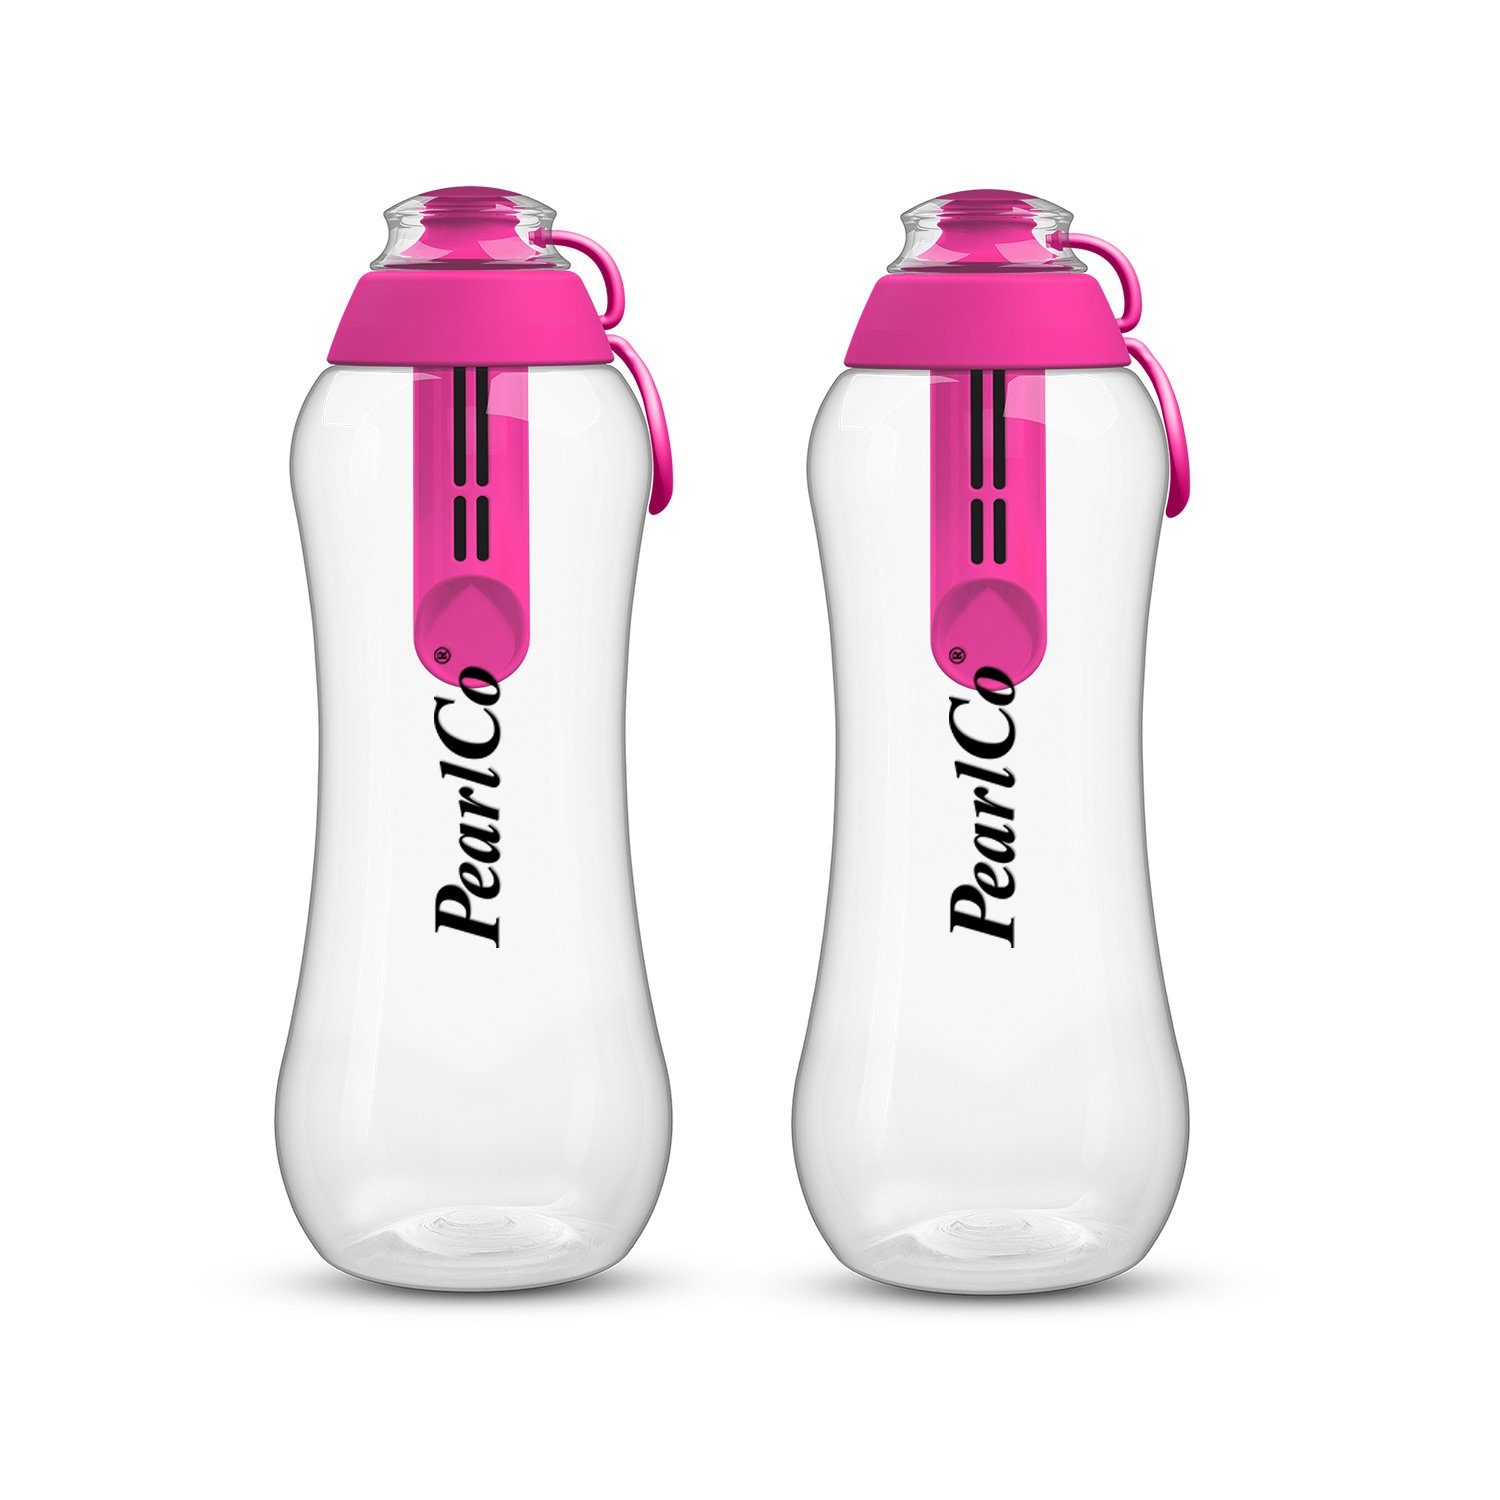 PearlCo Trinkflasche Zwei Liter pink mit 0,7 Trinkflaschen Filter